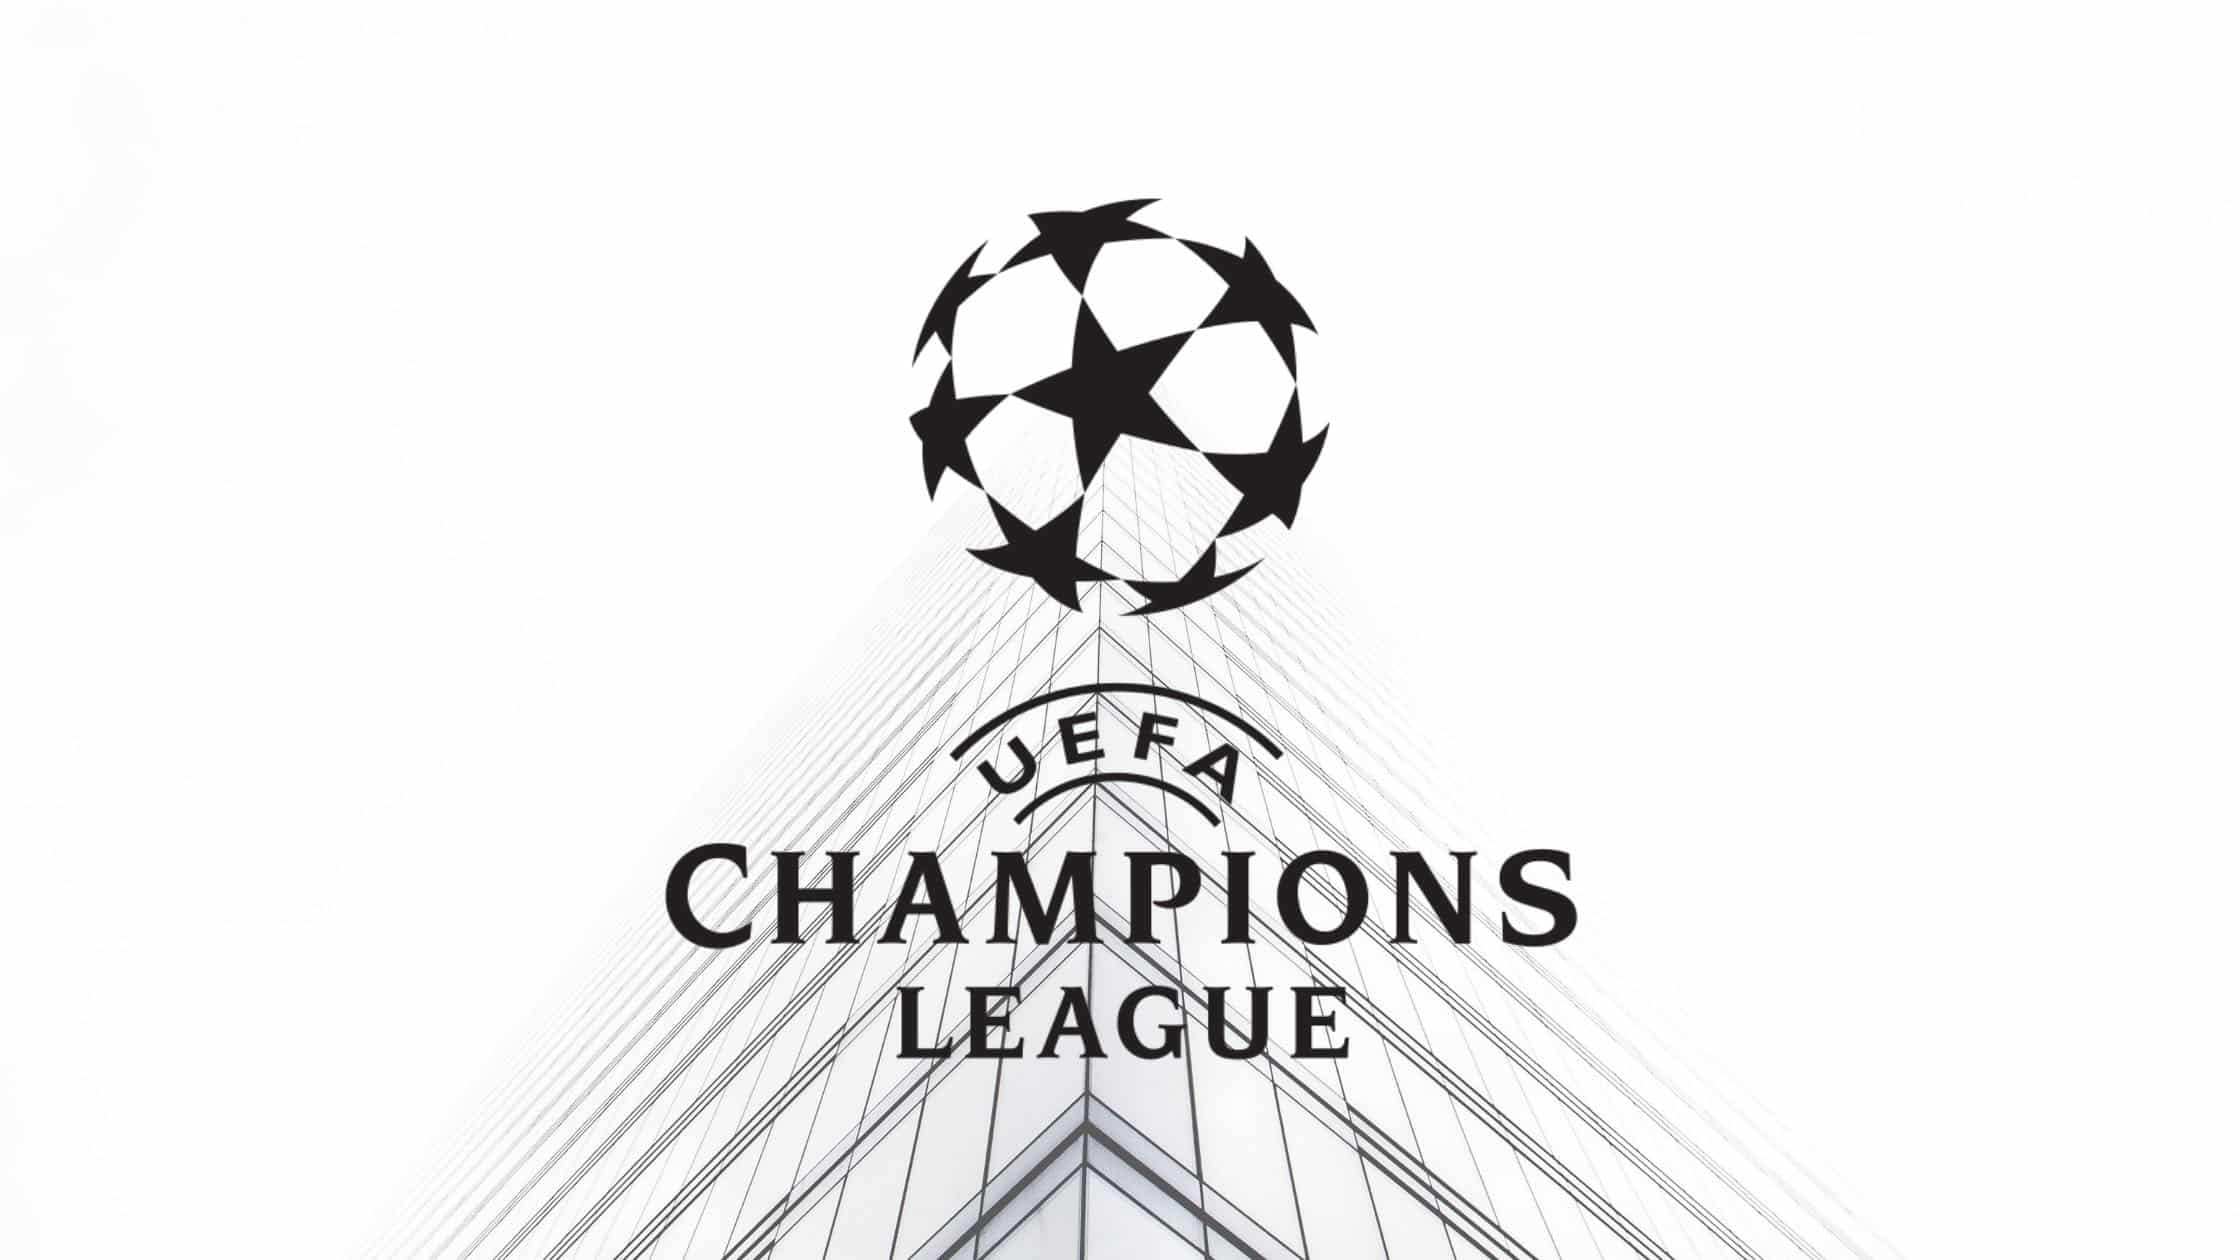 Die Champions League ist der wichtigste Fußball-Klub-Wettbewerb der Welt. Auslosung I Stream I Auszeichungen I Gruppenphase I Qualifikation I Finale.